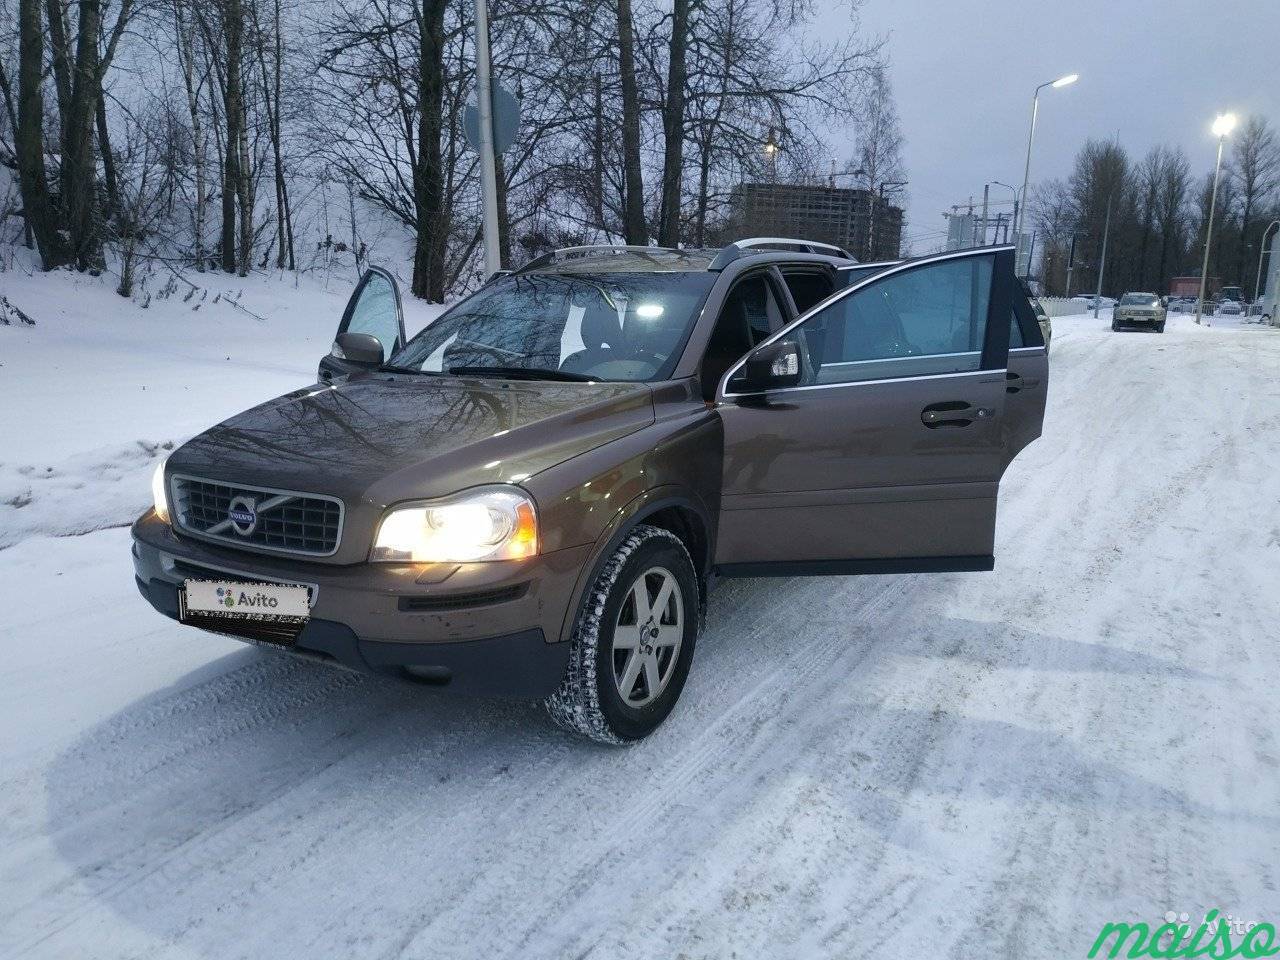 Volvo XC90 2.5 AT, 2011, внедорожник в Санкт-Петербурге. Фото 1